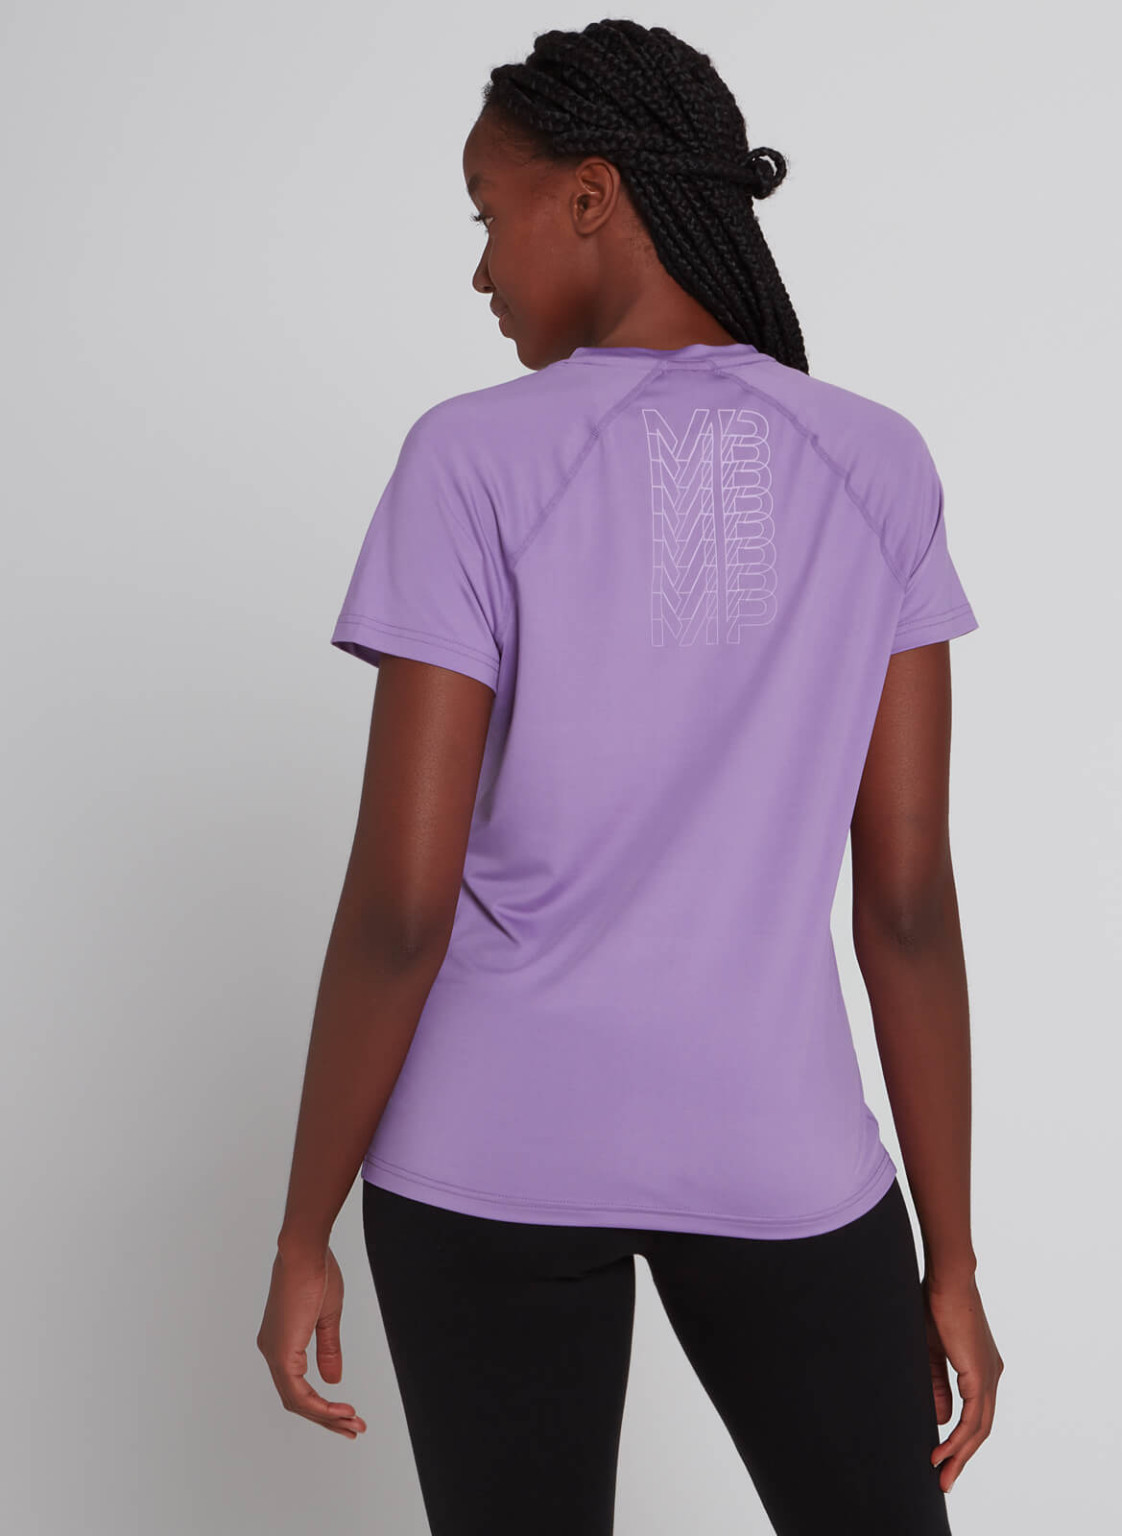 fioletowa koszulka sportowa krótki rękaw logo nadruk